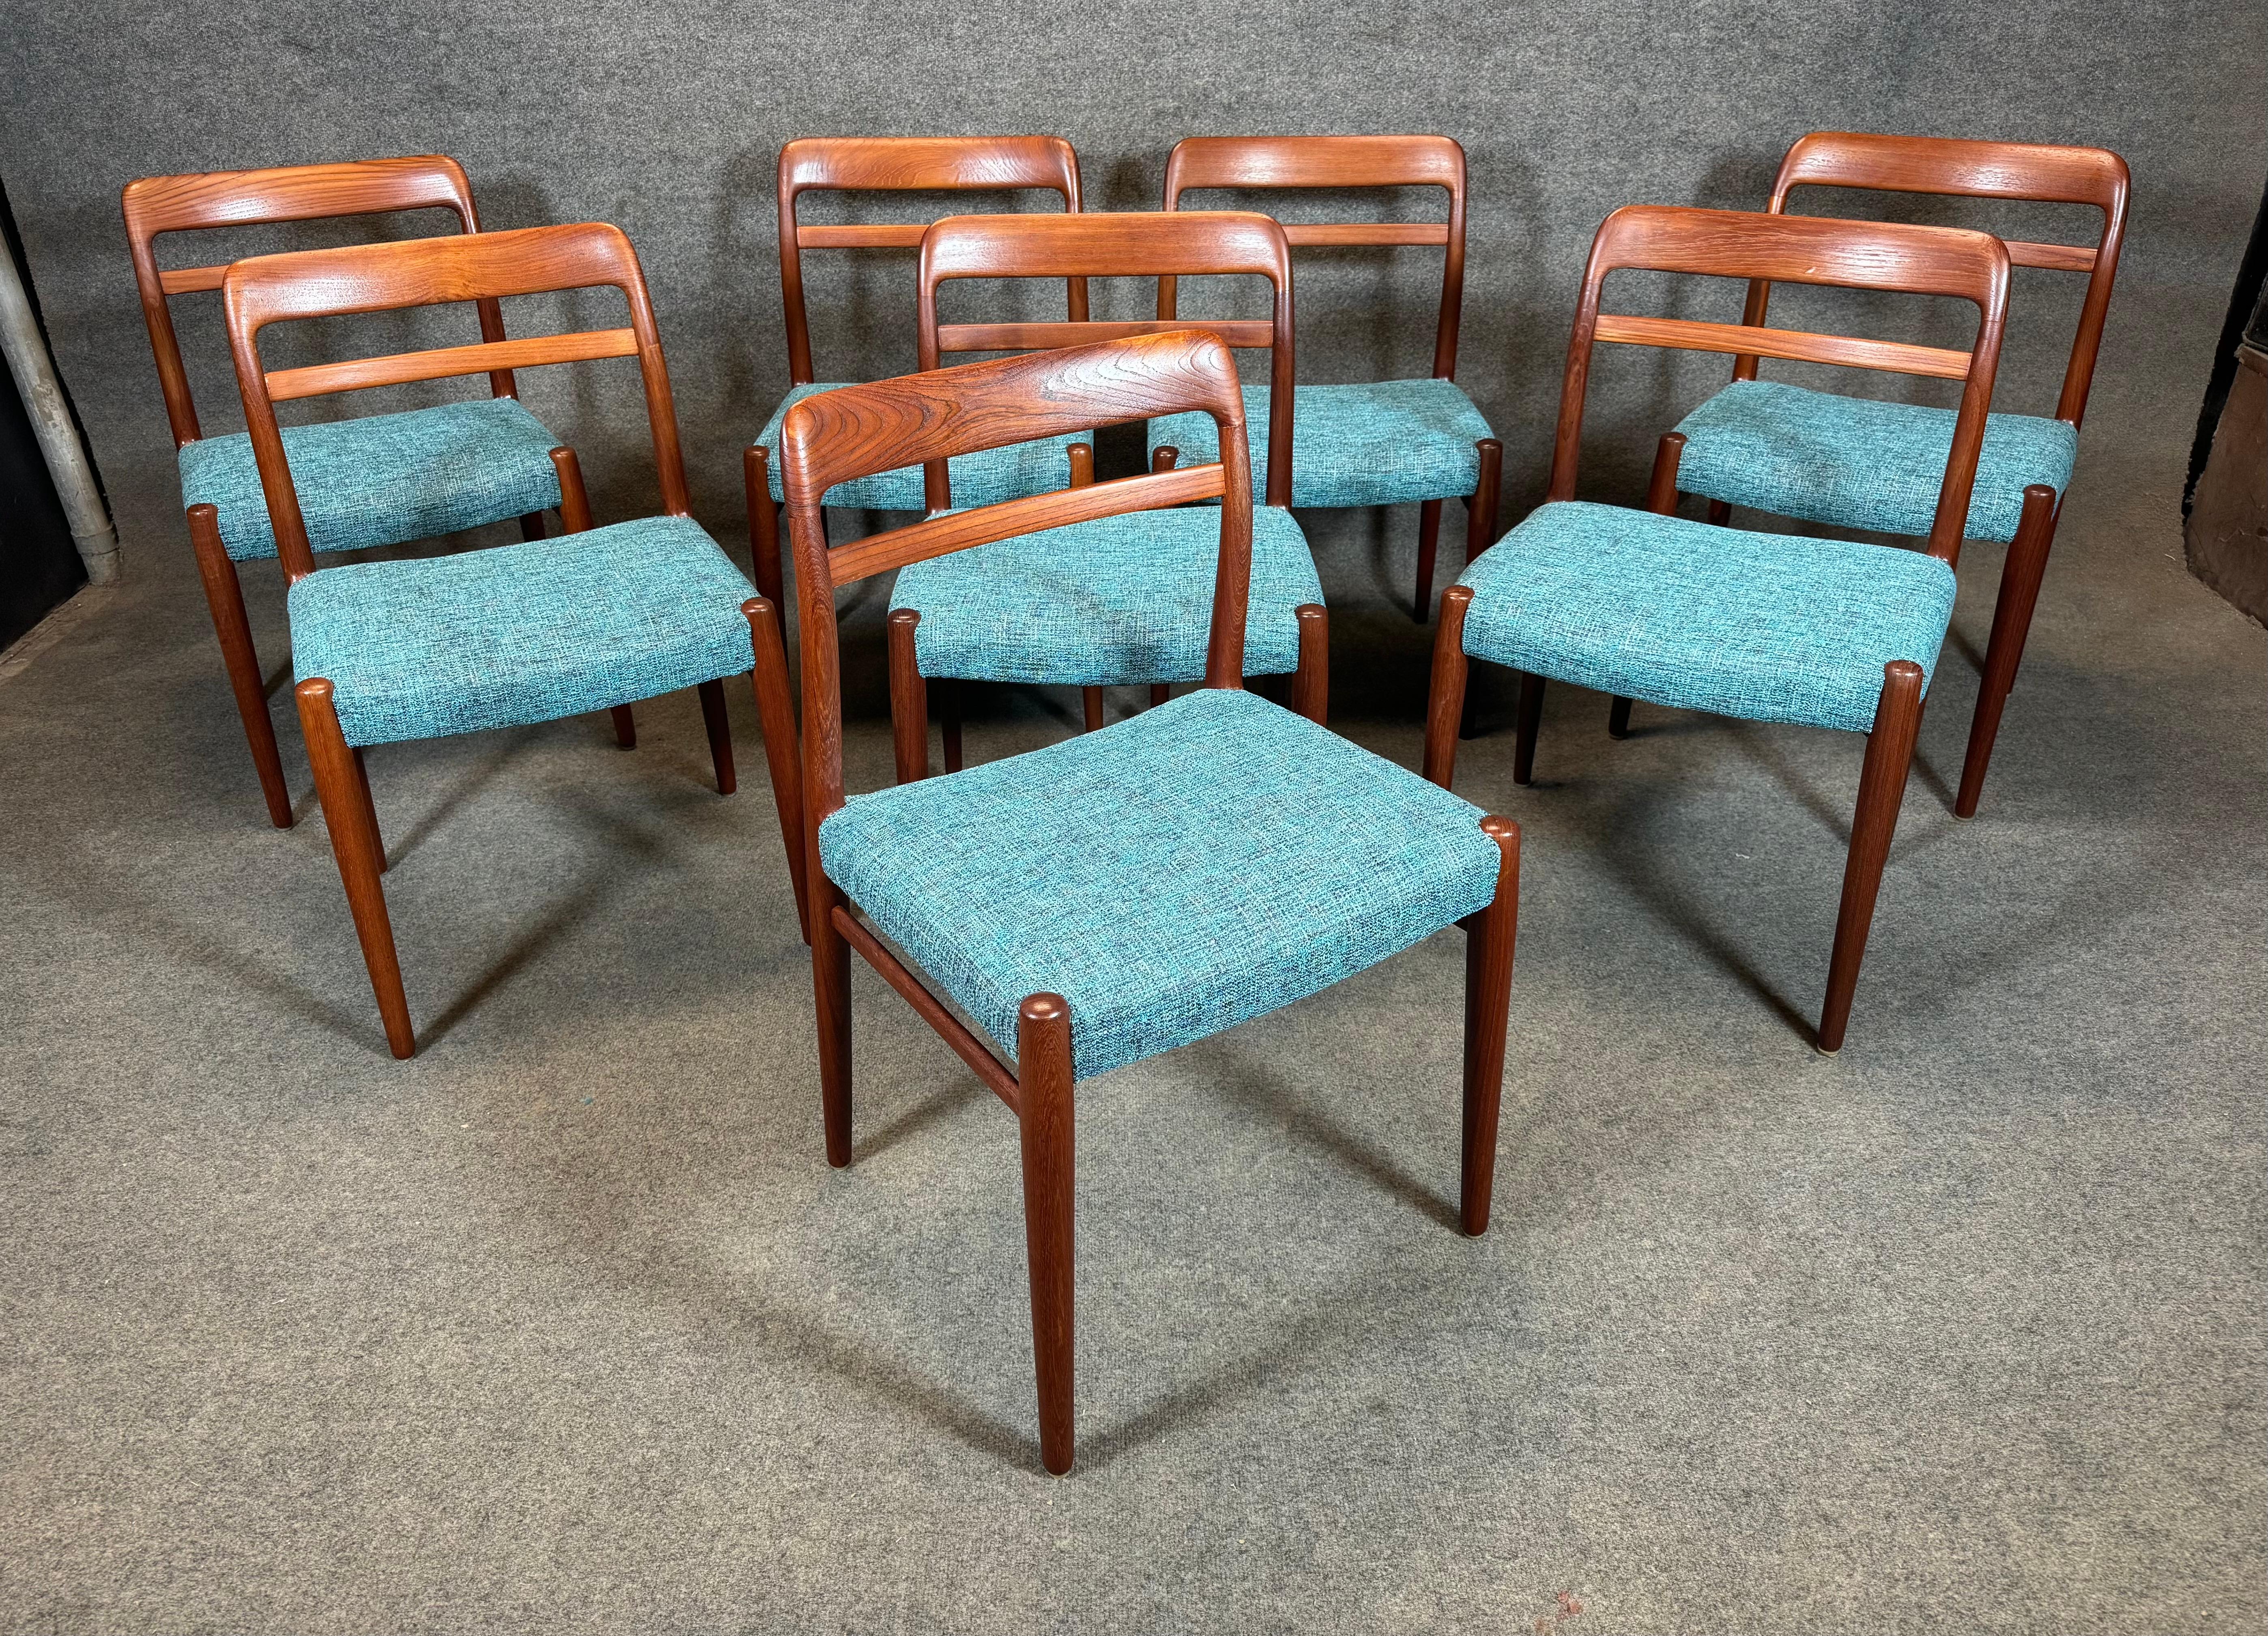 Voici un magnifique ensemble de 8 chaises de salle à manger vintage en teck moderne scandinave, modèle 145, conçu par Alf Aarseth et fabriqué par Gustav Bahus en Norvège dans les années 1960.
Cet ensemble exclusif de chaises confortables, récemment